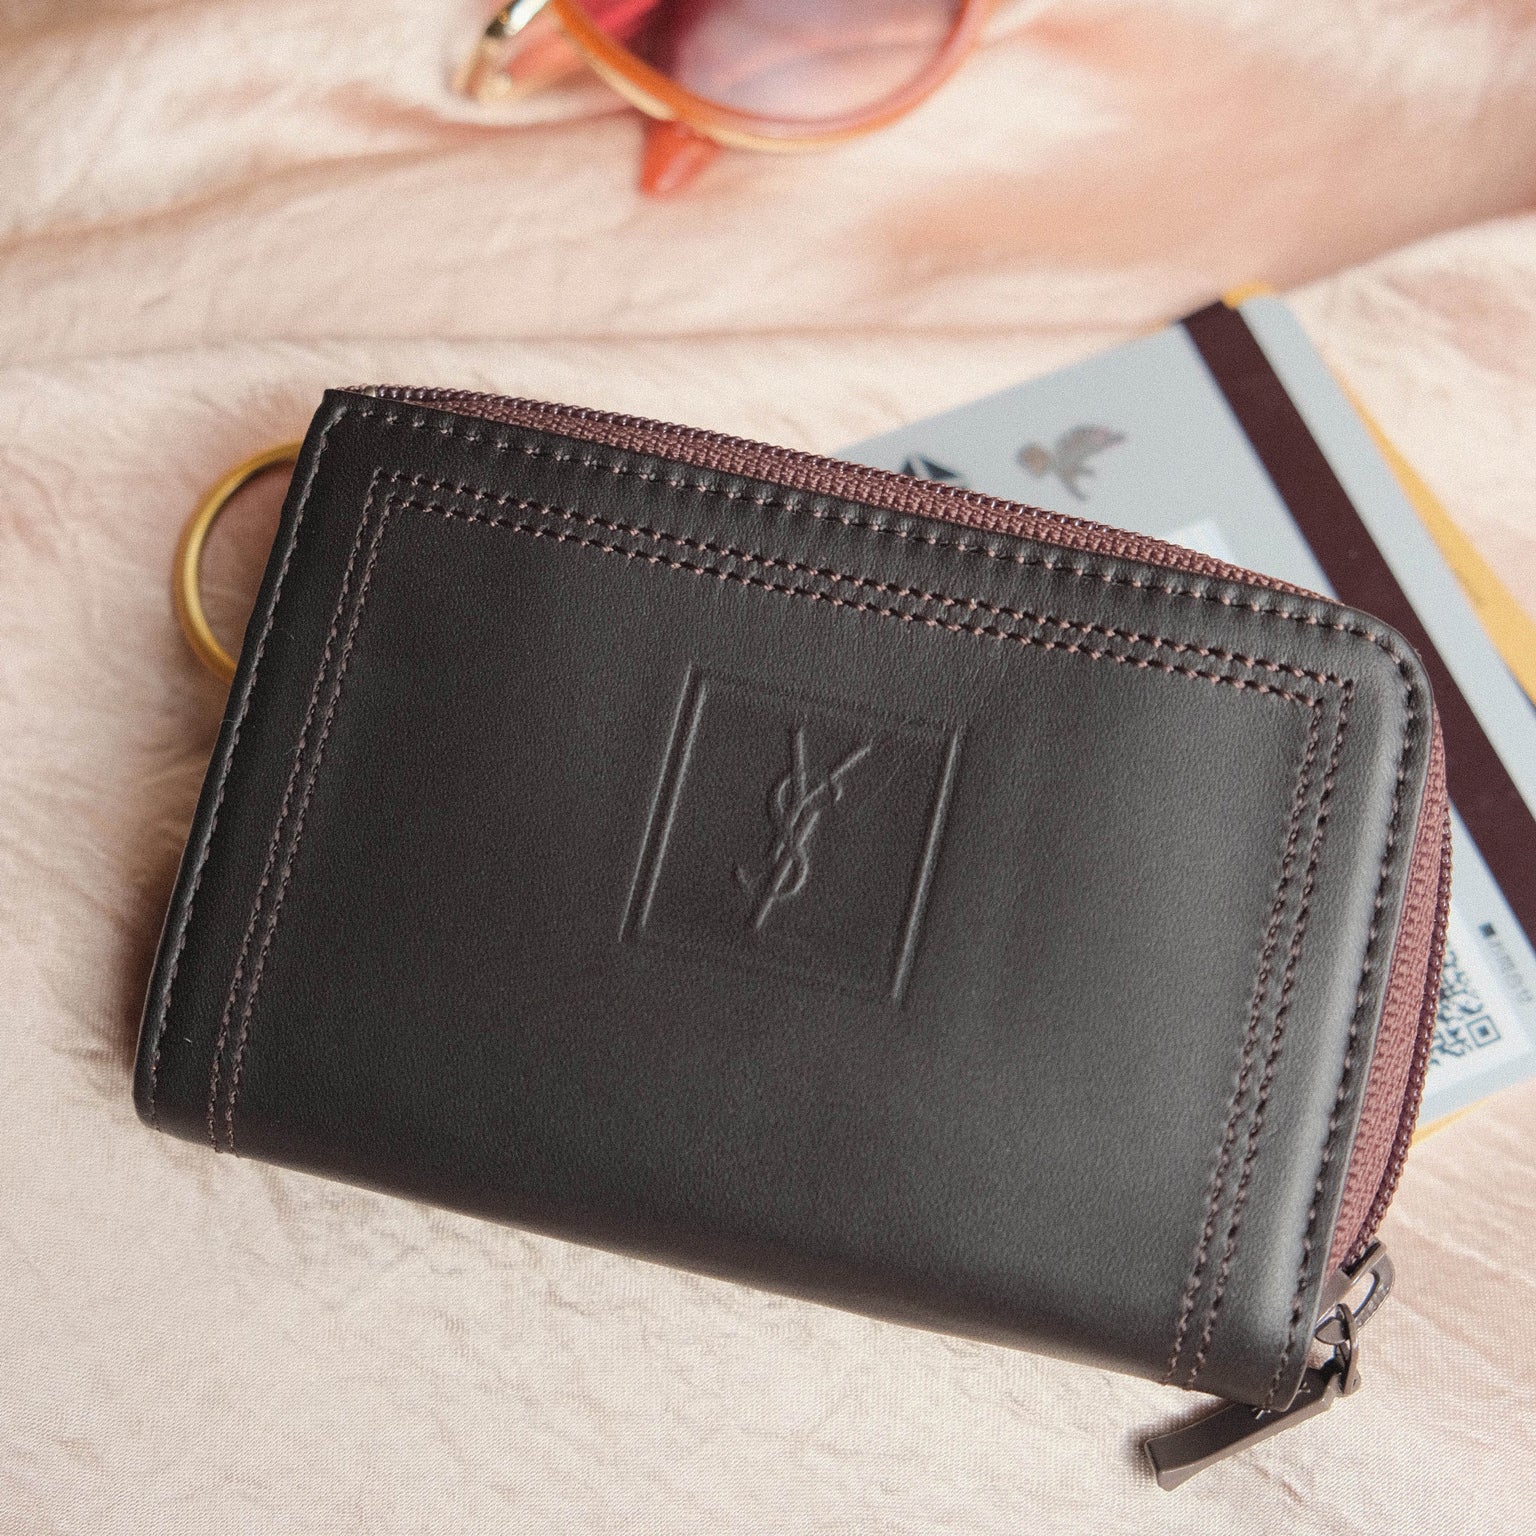 YSL Saint Laurent Leather Compact Zip Around Wallet